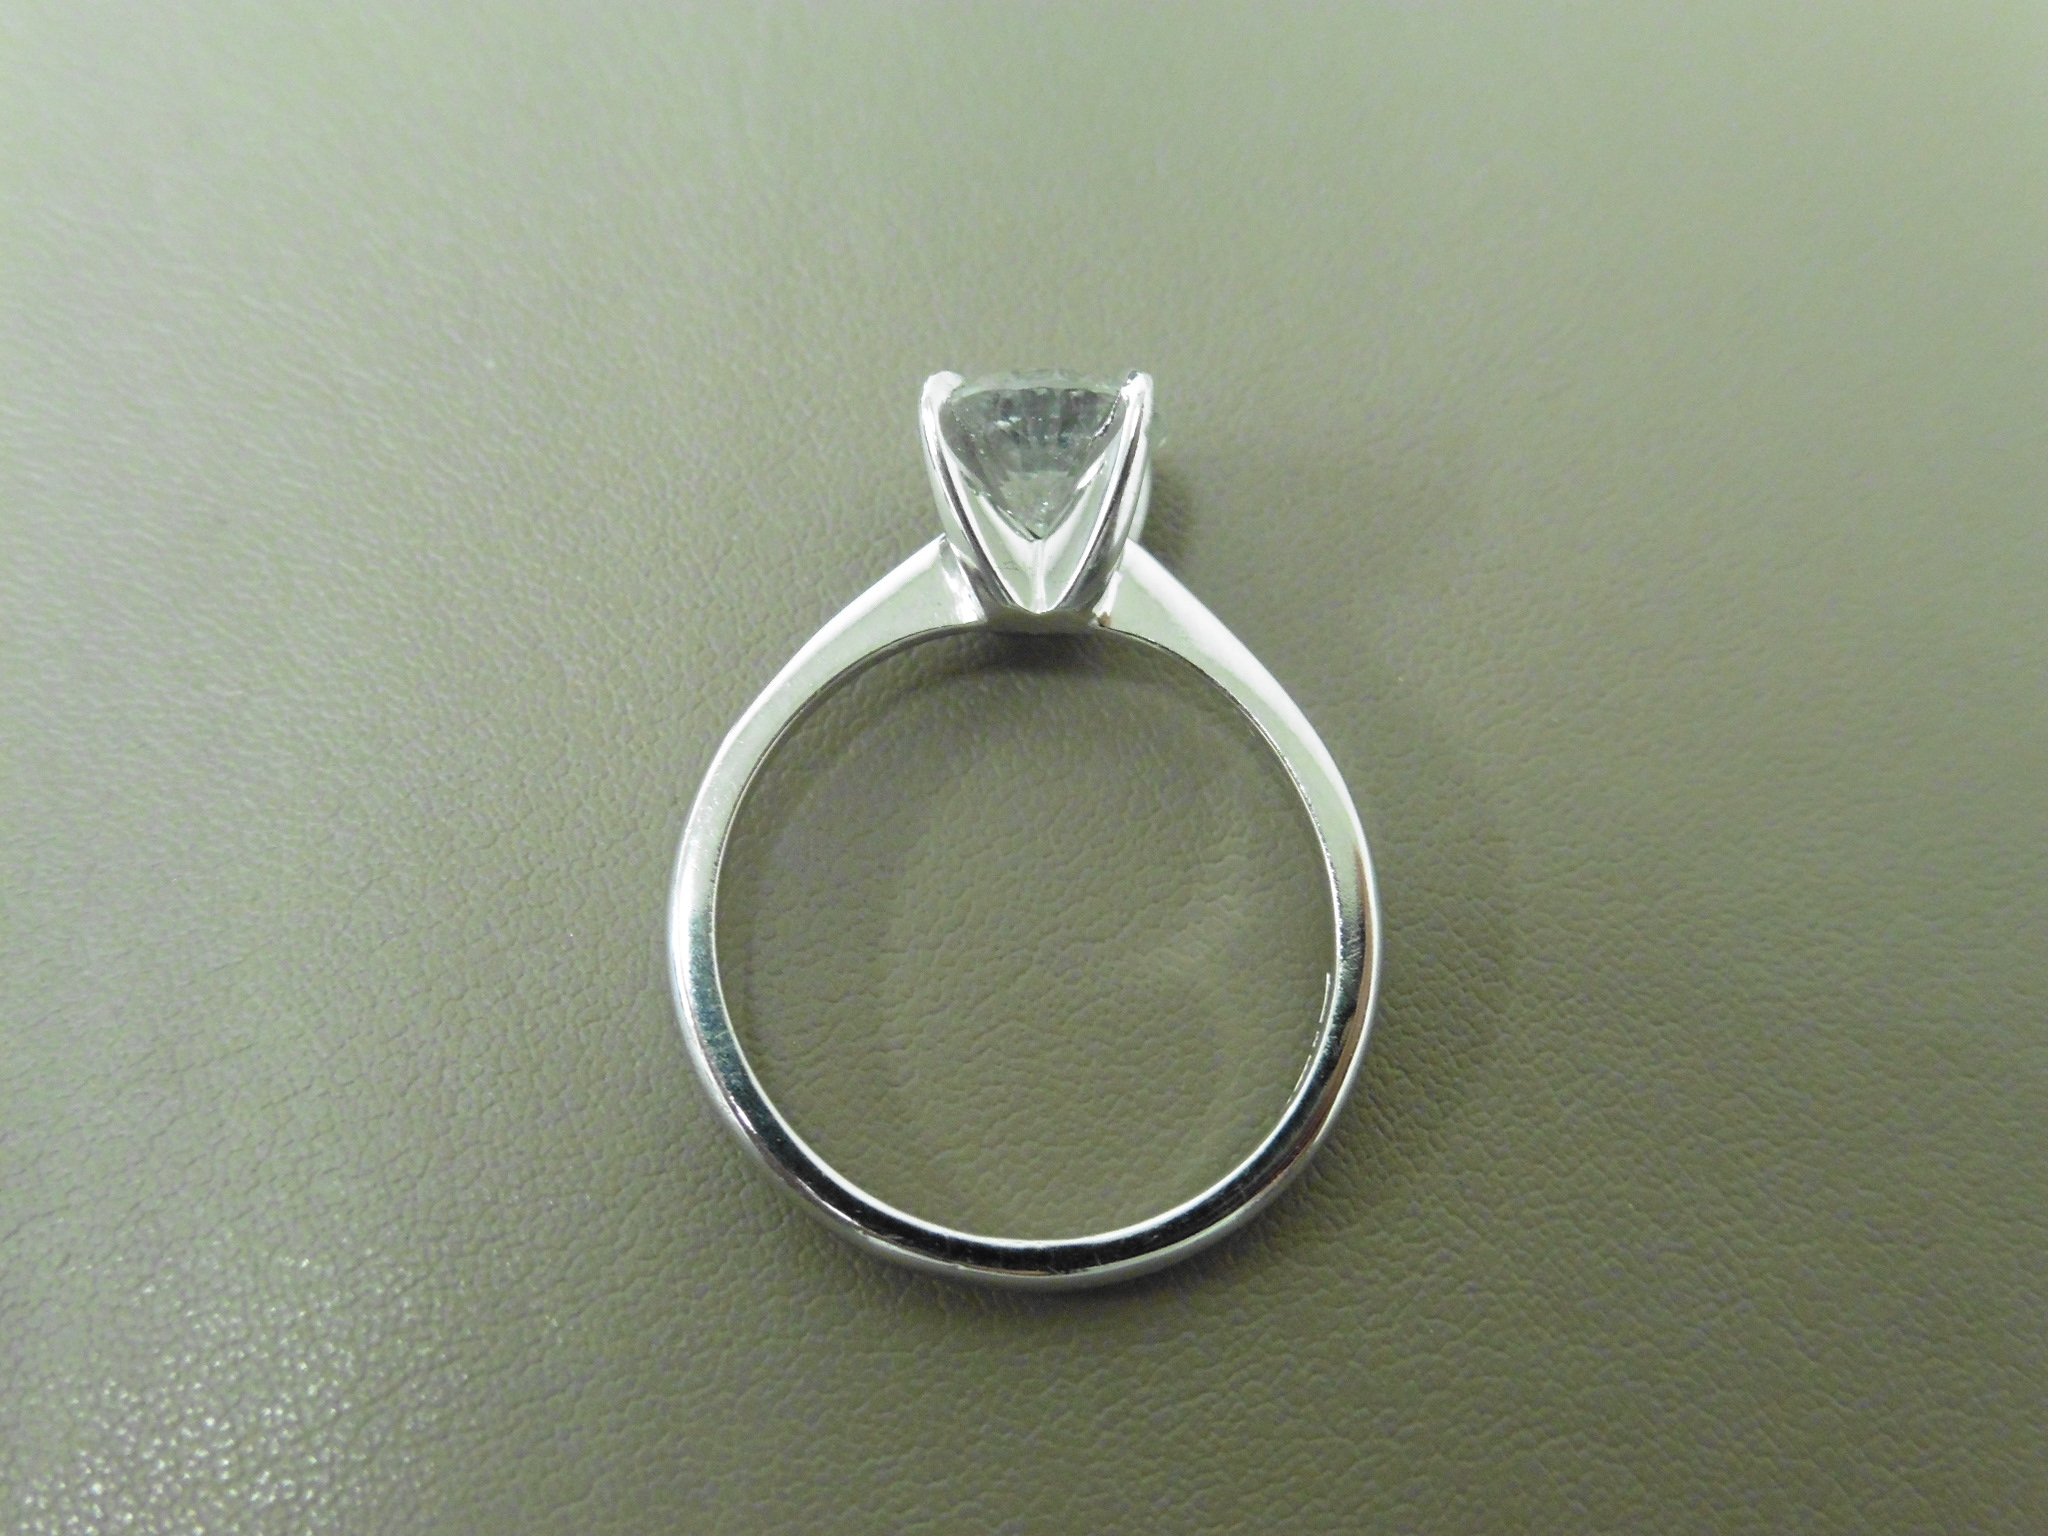 1.24Ct Diamond Solitaire Ring Set In Platinum. - Image 3 of 3